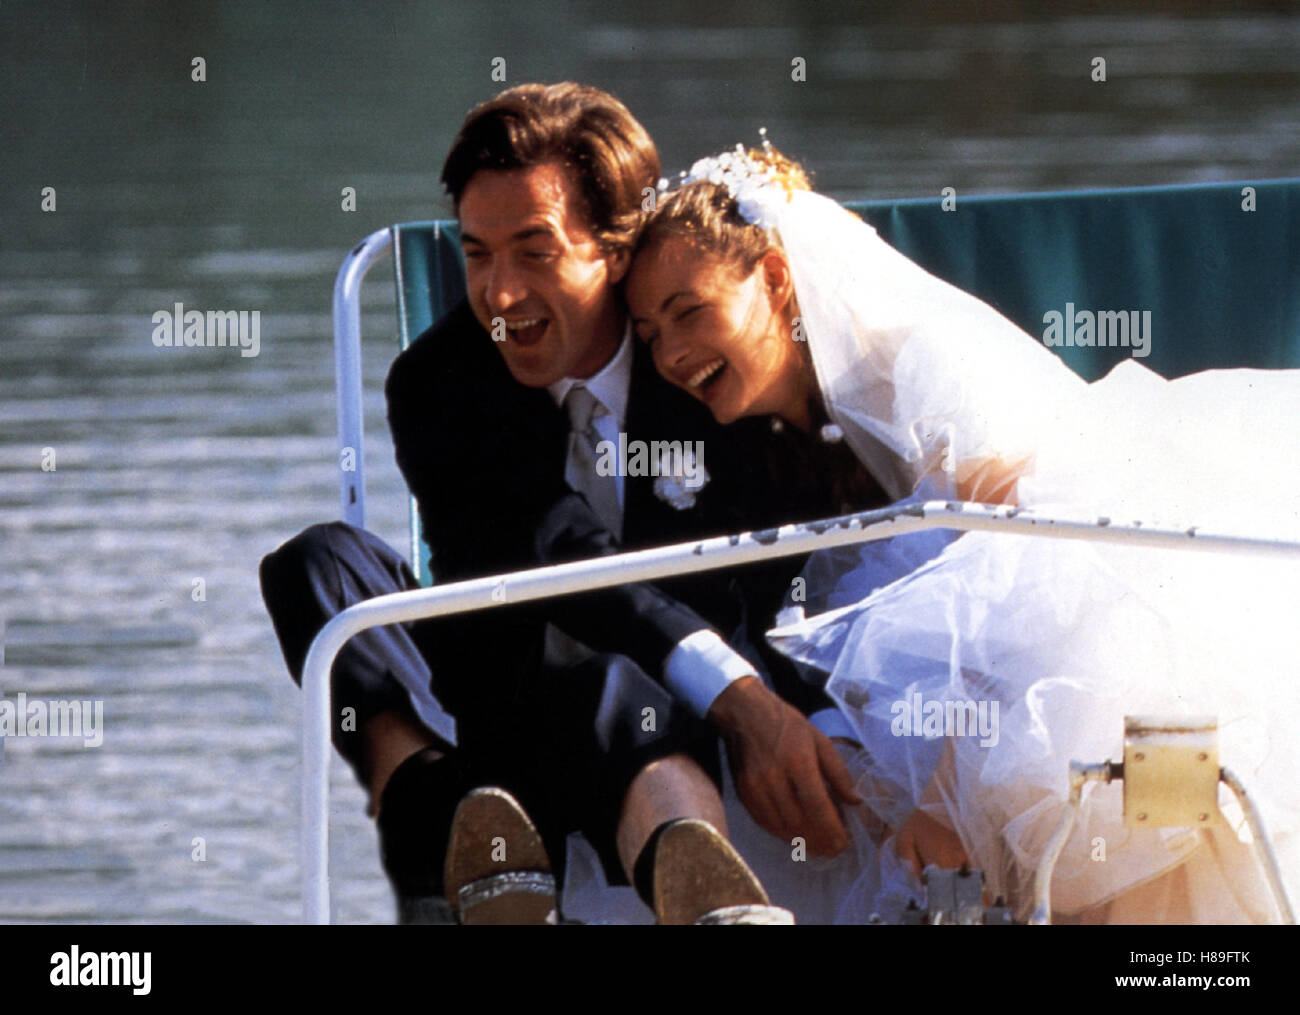 Die Hölle, (L' ENFER) F 1994, Regie: Claude Chabrol, FRANCOIS CLUZET, EMMANUELLE BEART, Stichwort: Brautpaar, Braut, Schleier, Boot, Wasser Stock Photo